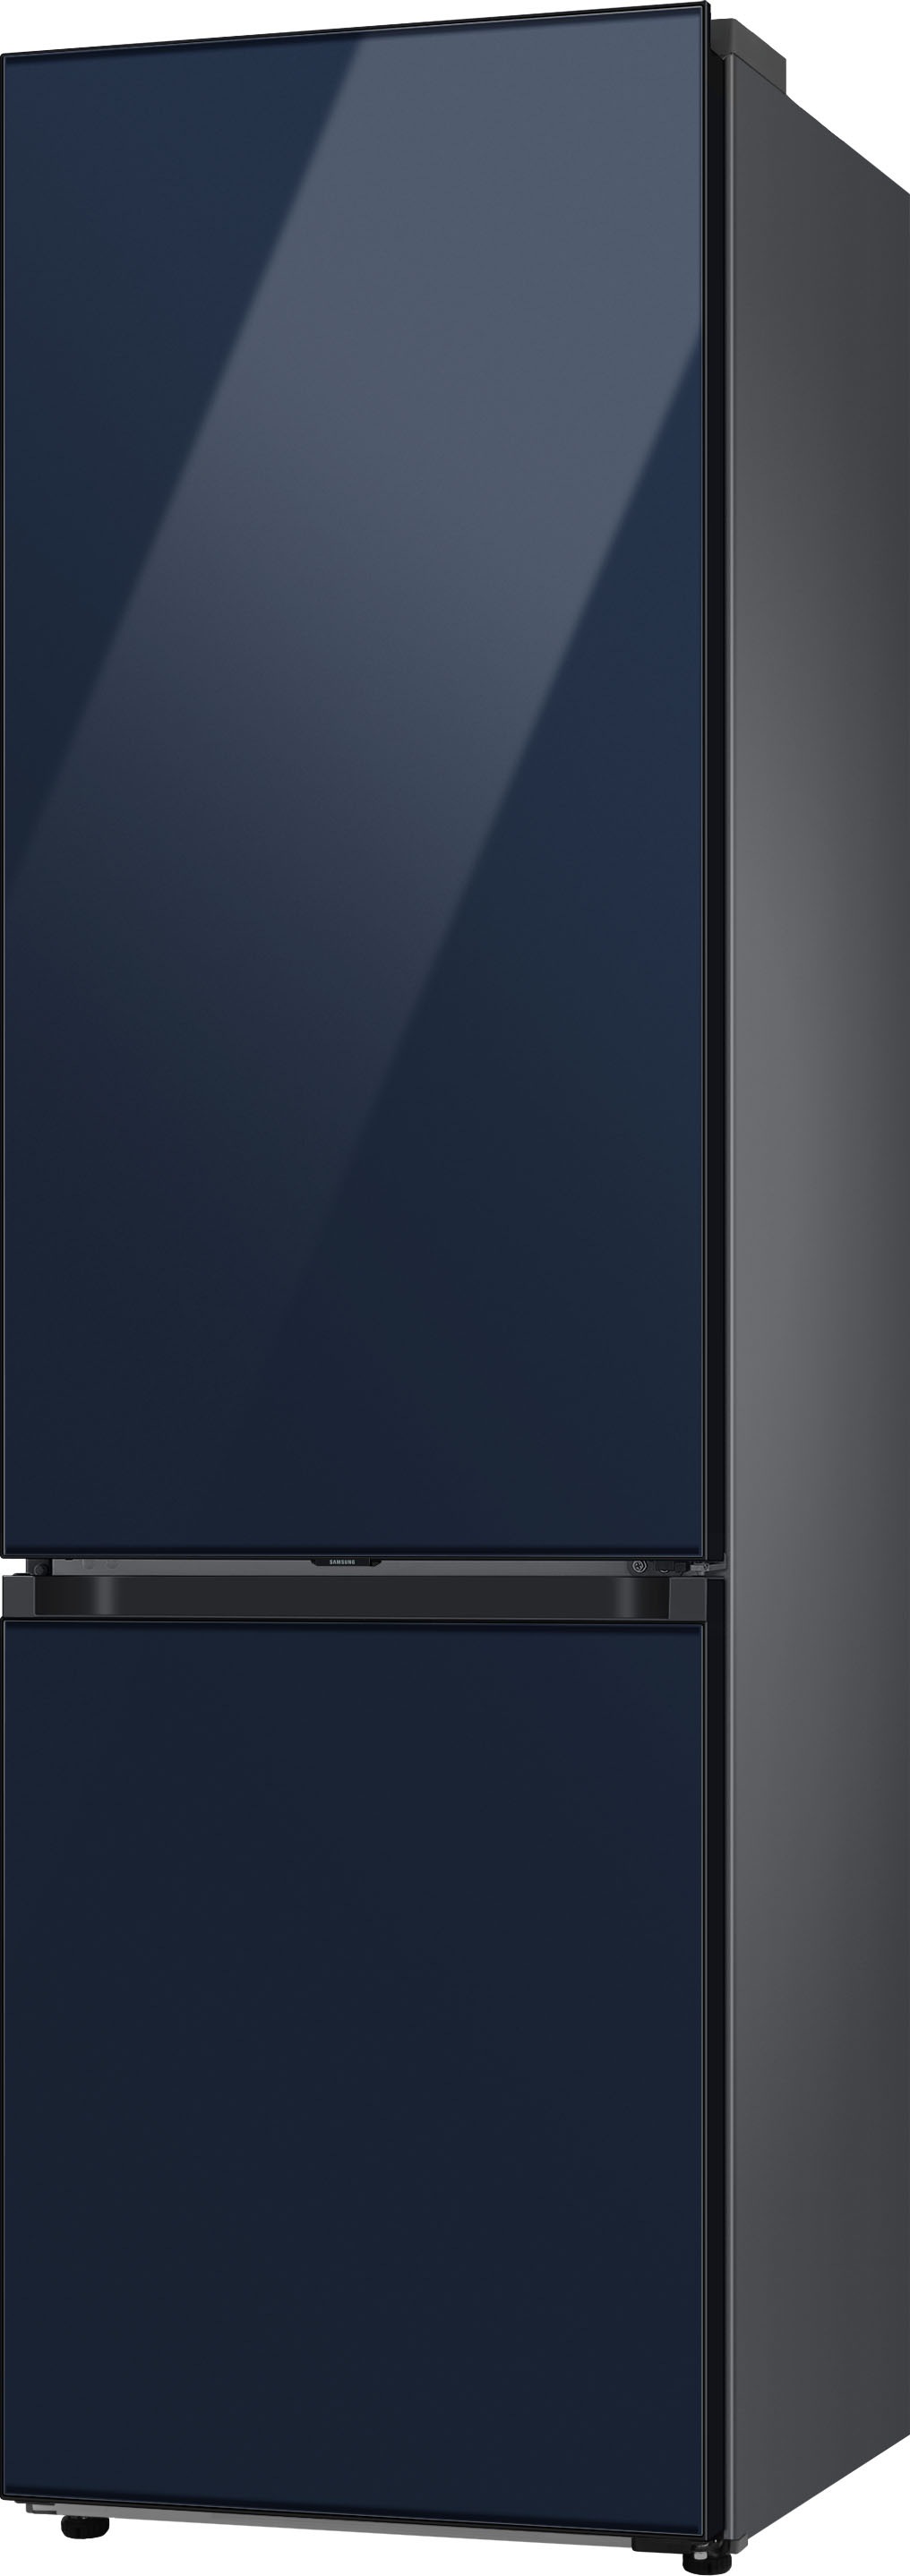 Samsung Kühl-/Gefrierkombination 59 cm cm breit hoch, 203 BAUR »RL38A6B6C41«, ,5 RL38A6B6C41, 